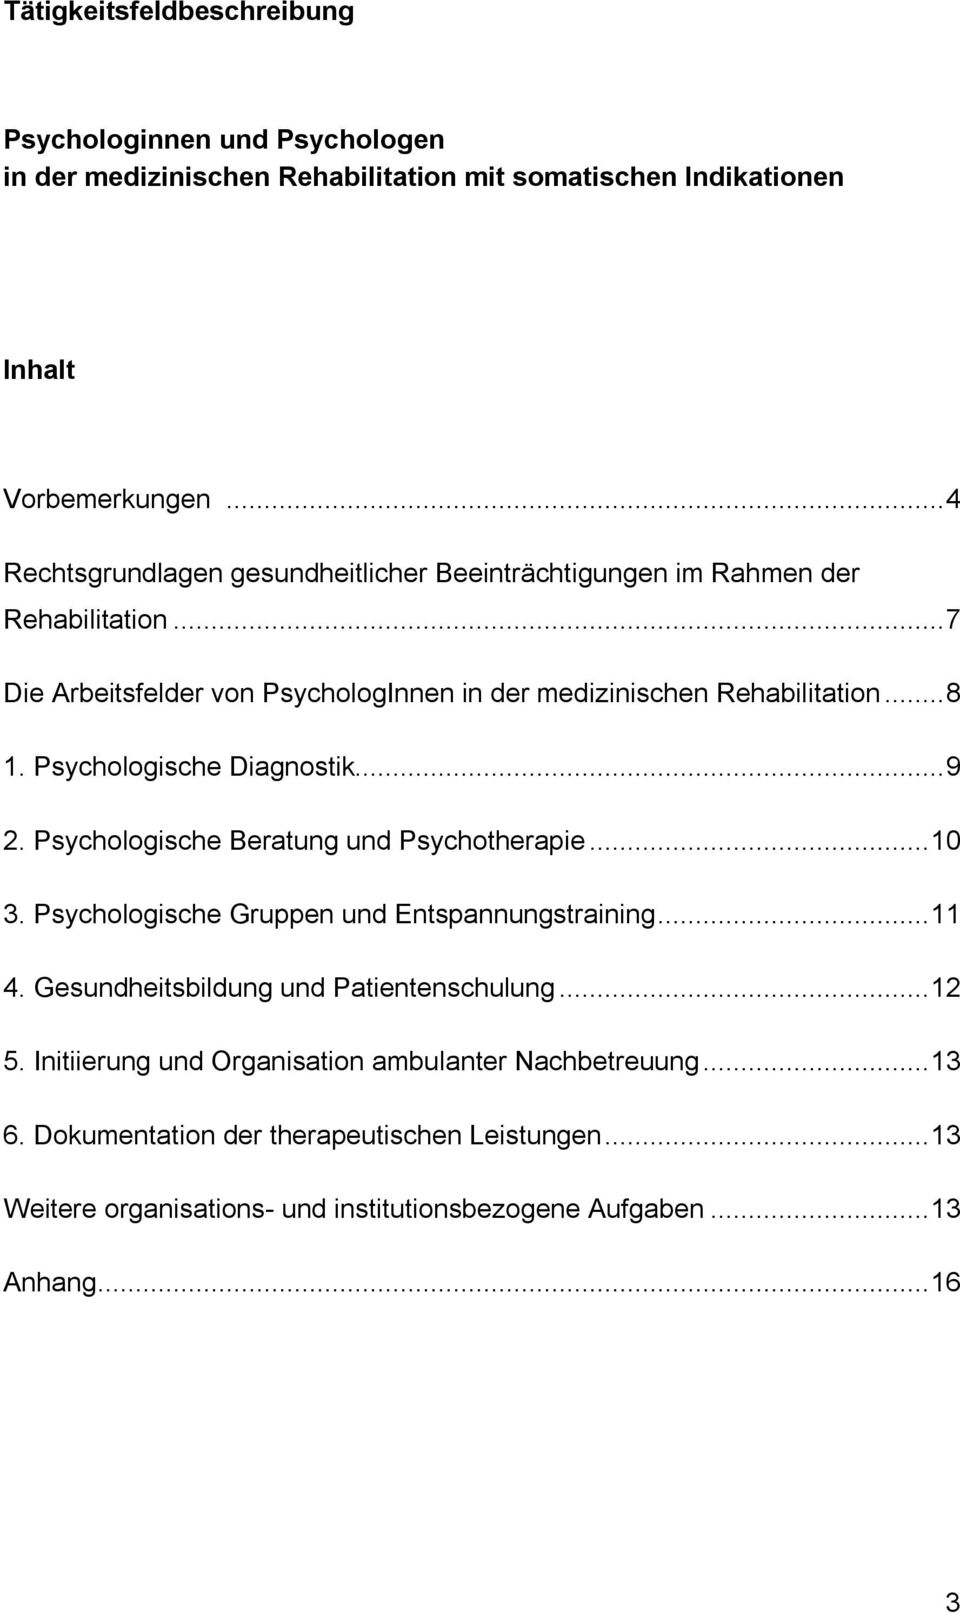 Psychologische Diagnostik...9 2. Psychologische Beratung und Psychotherapie...10 3. Psychologische Gruppen und Entspannungstraining...11 4.